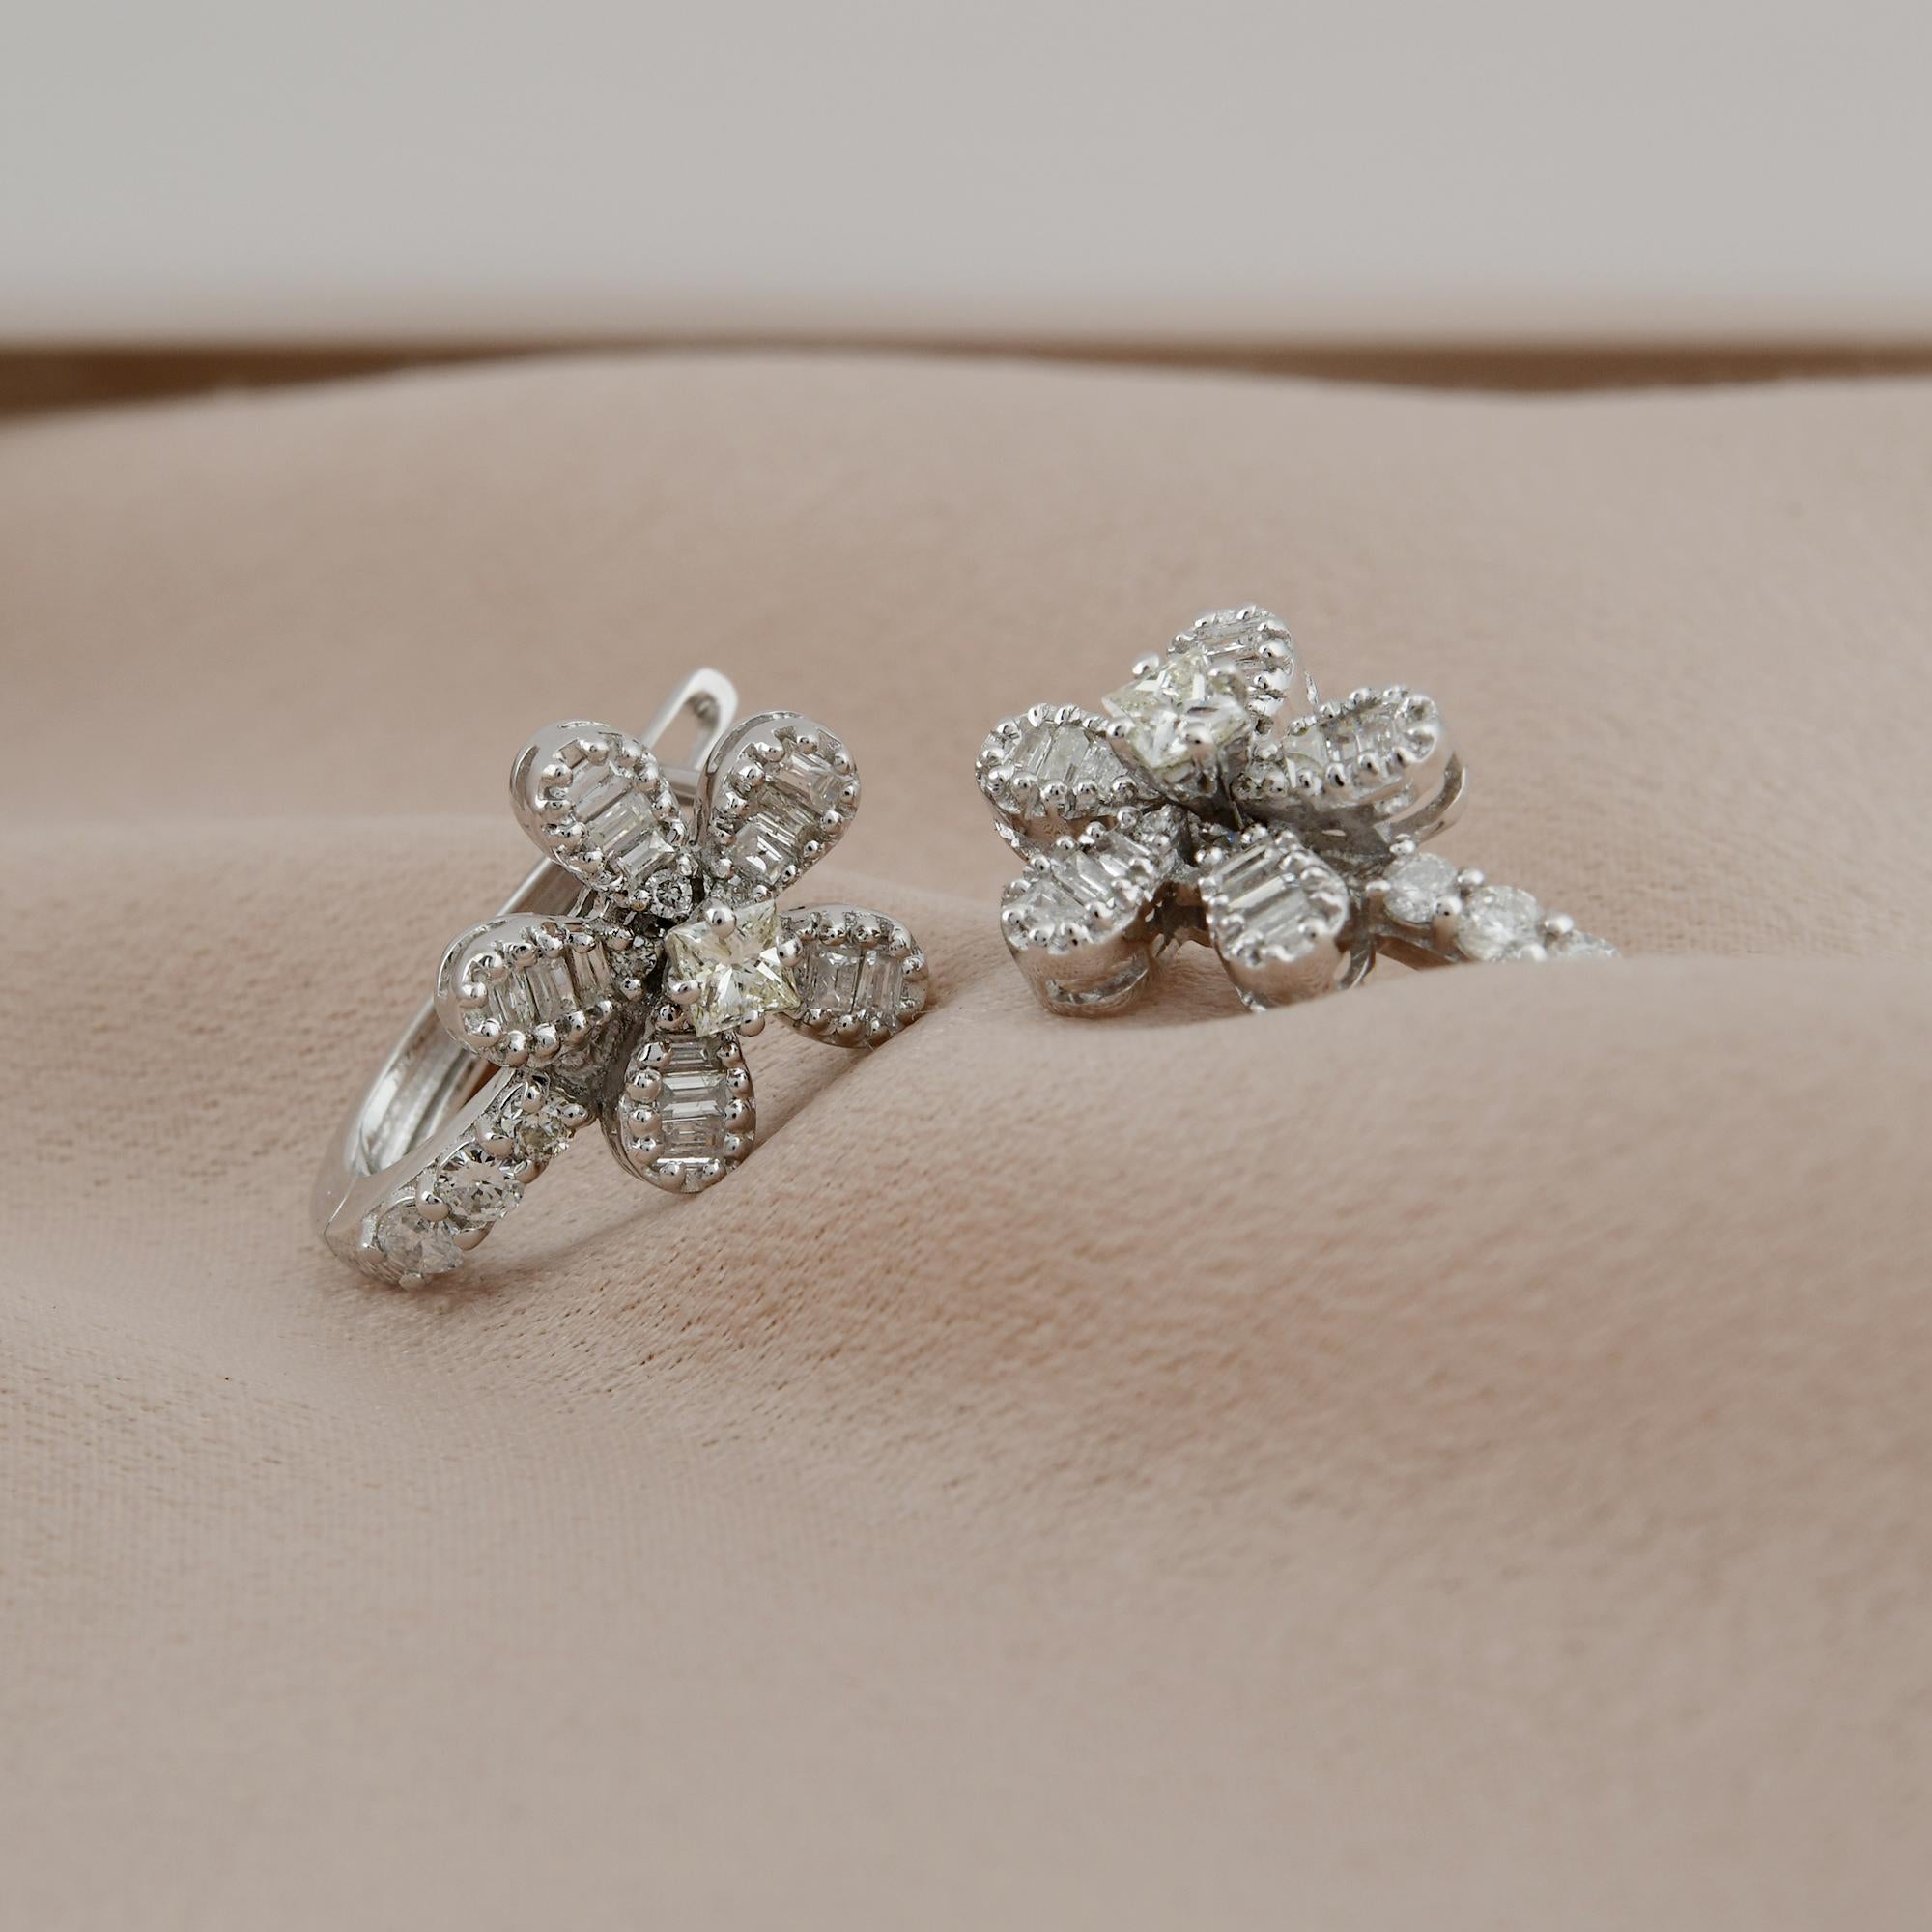 Baguette Cut Baguette & Princess Cut Diamond Flower Earrings 18 Karat White Gold Fine Jewelry For Sale